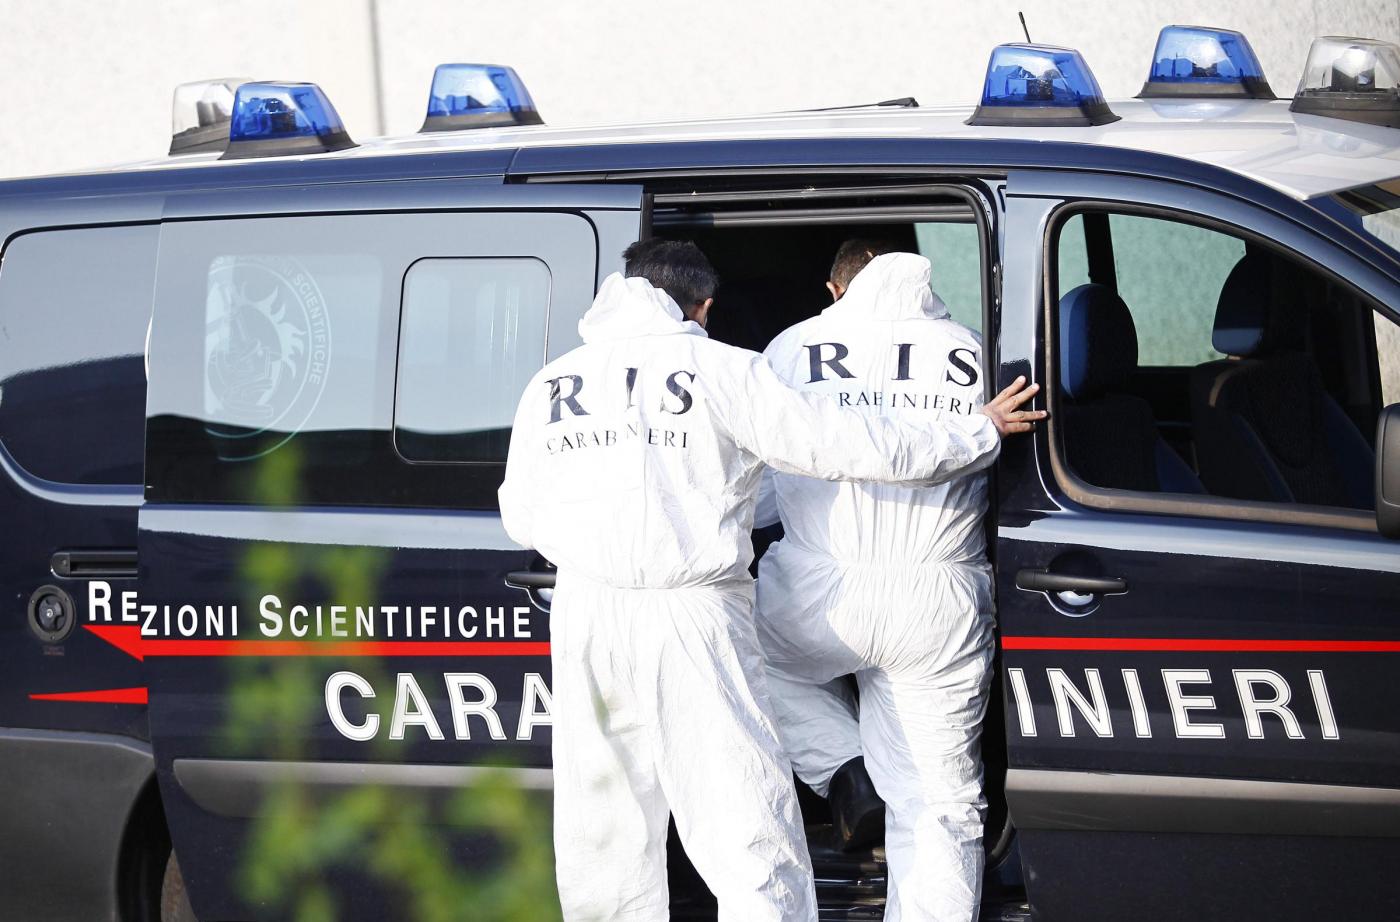 Vademecum persone scomparse ris carabinieri